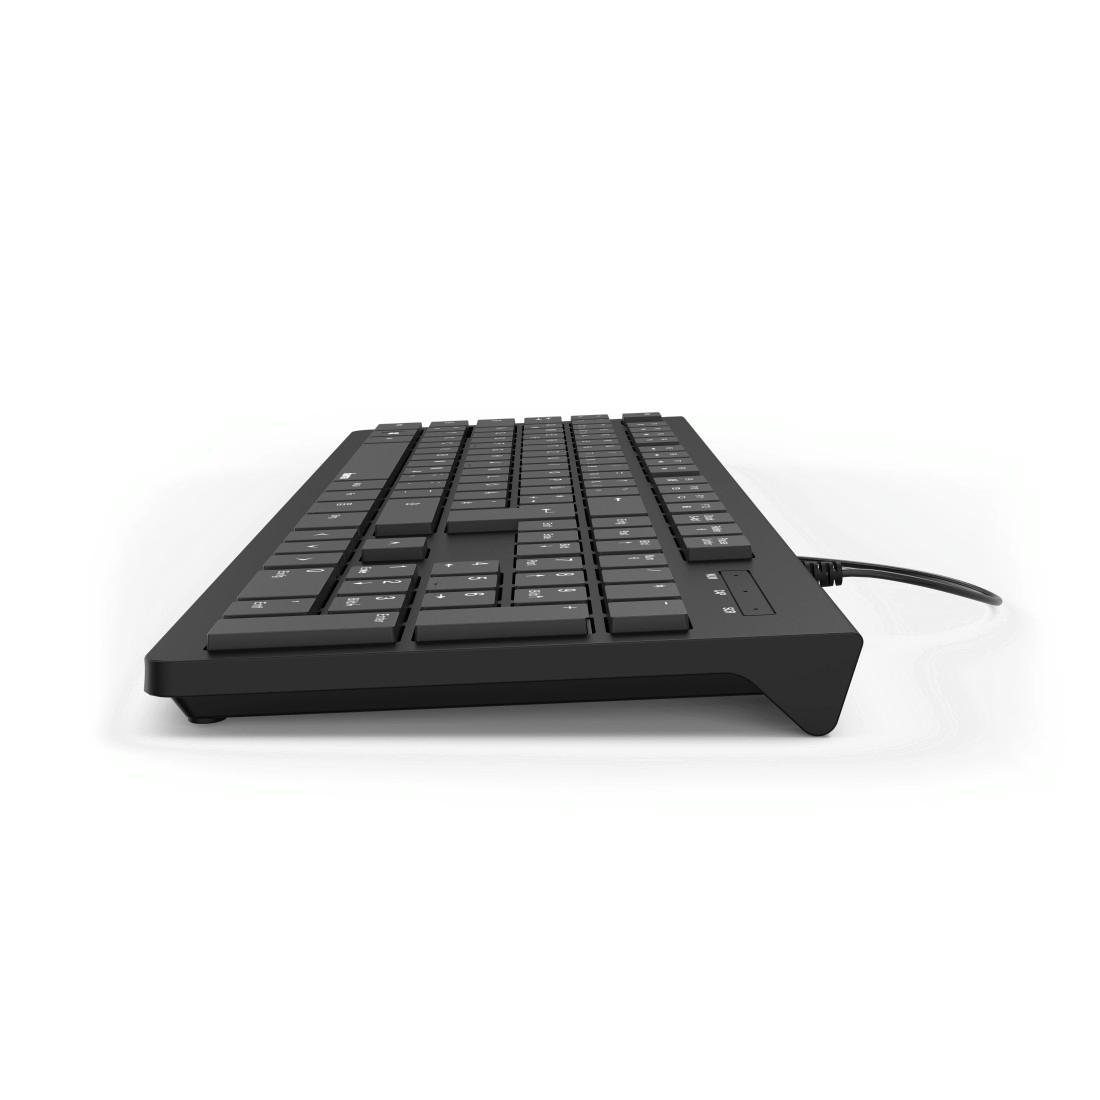 Basic-Tastatur PC-Tastatur "KC-200", m 1,5 (Abgesetzte Kabellänge Hama Standfüße) Schwarz USB-A-Stecker, Tasten/Klappbare